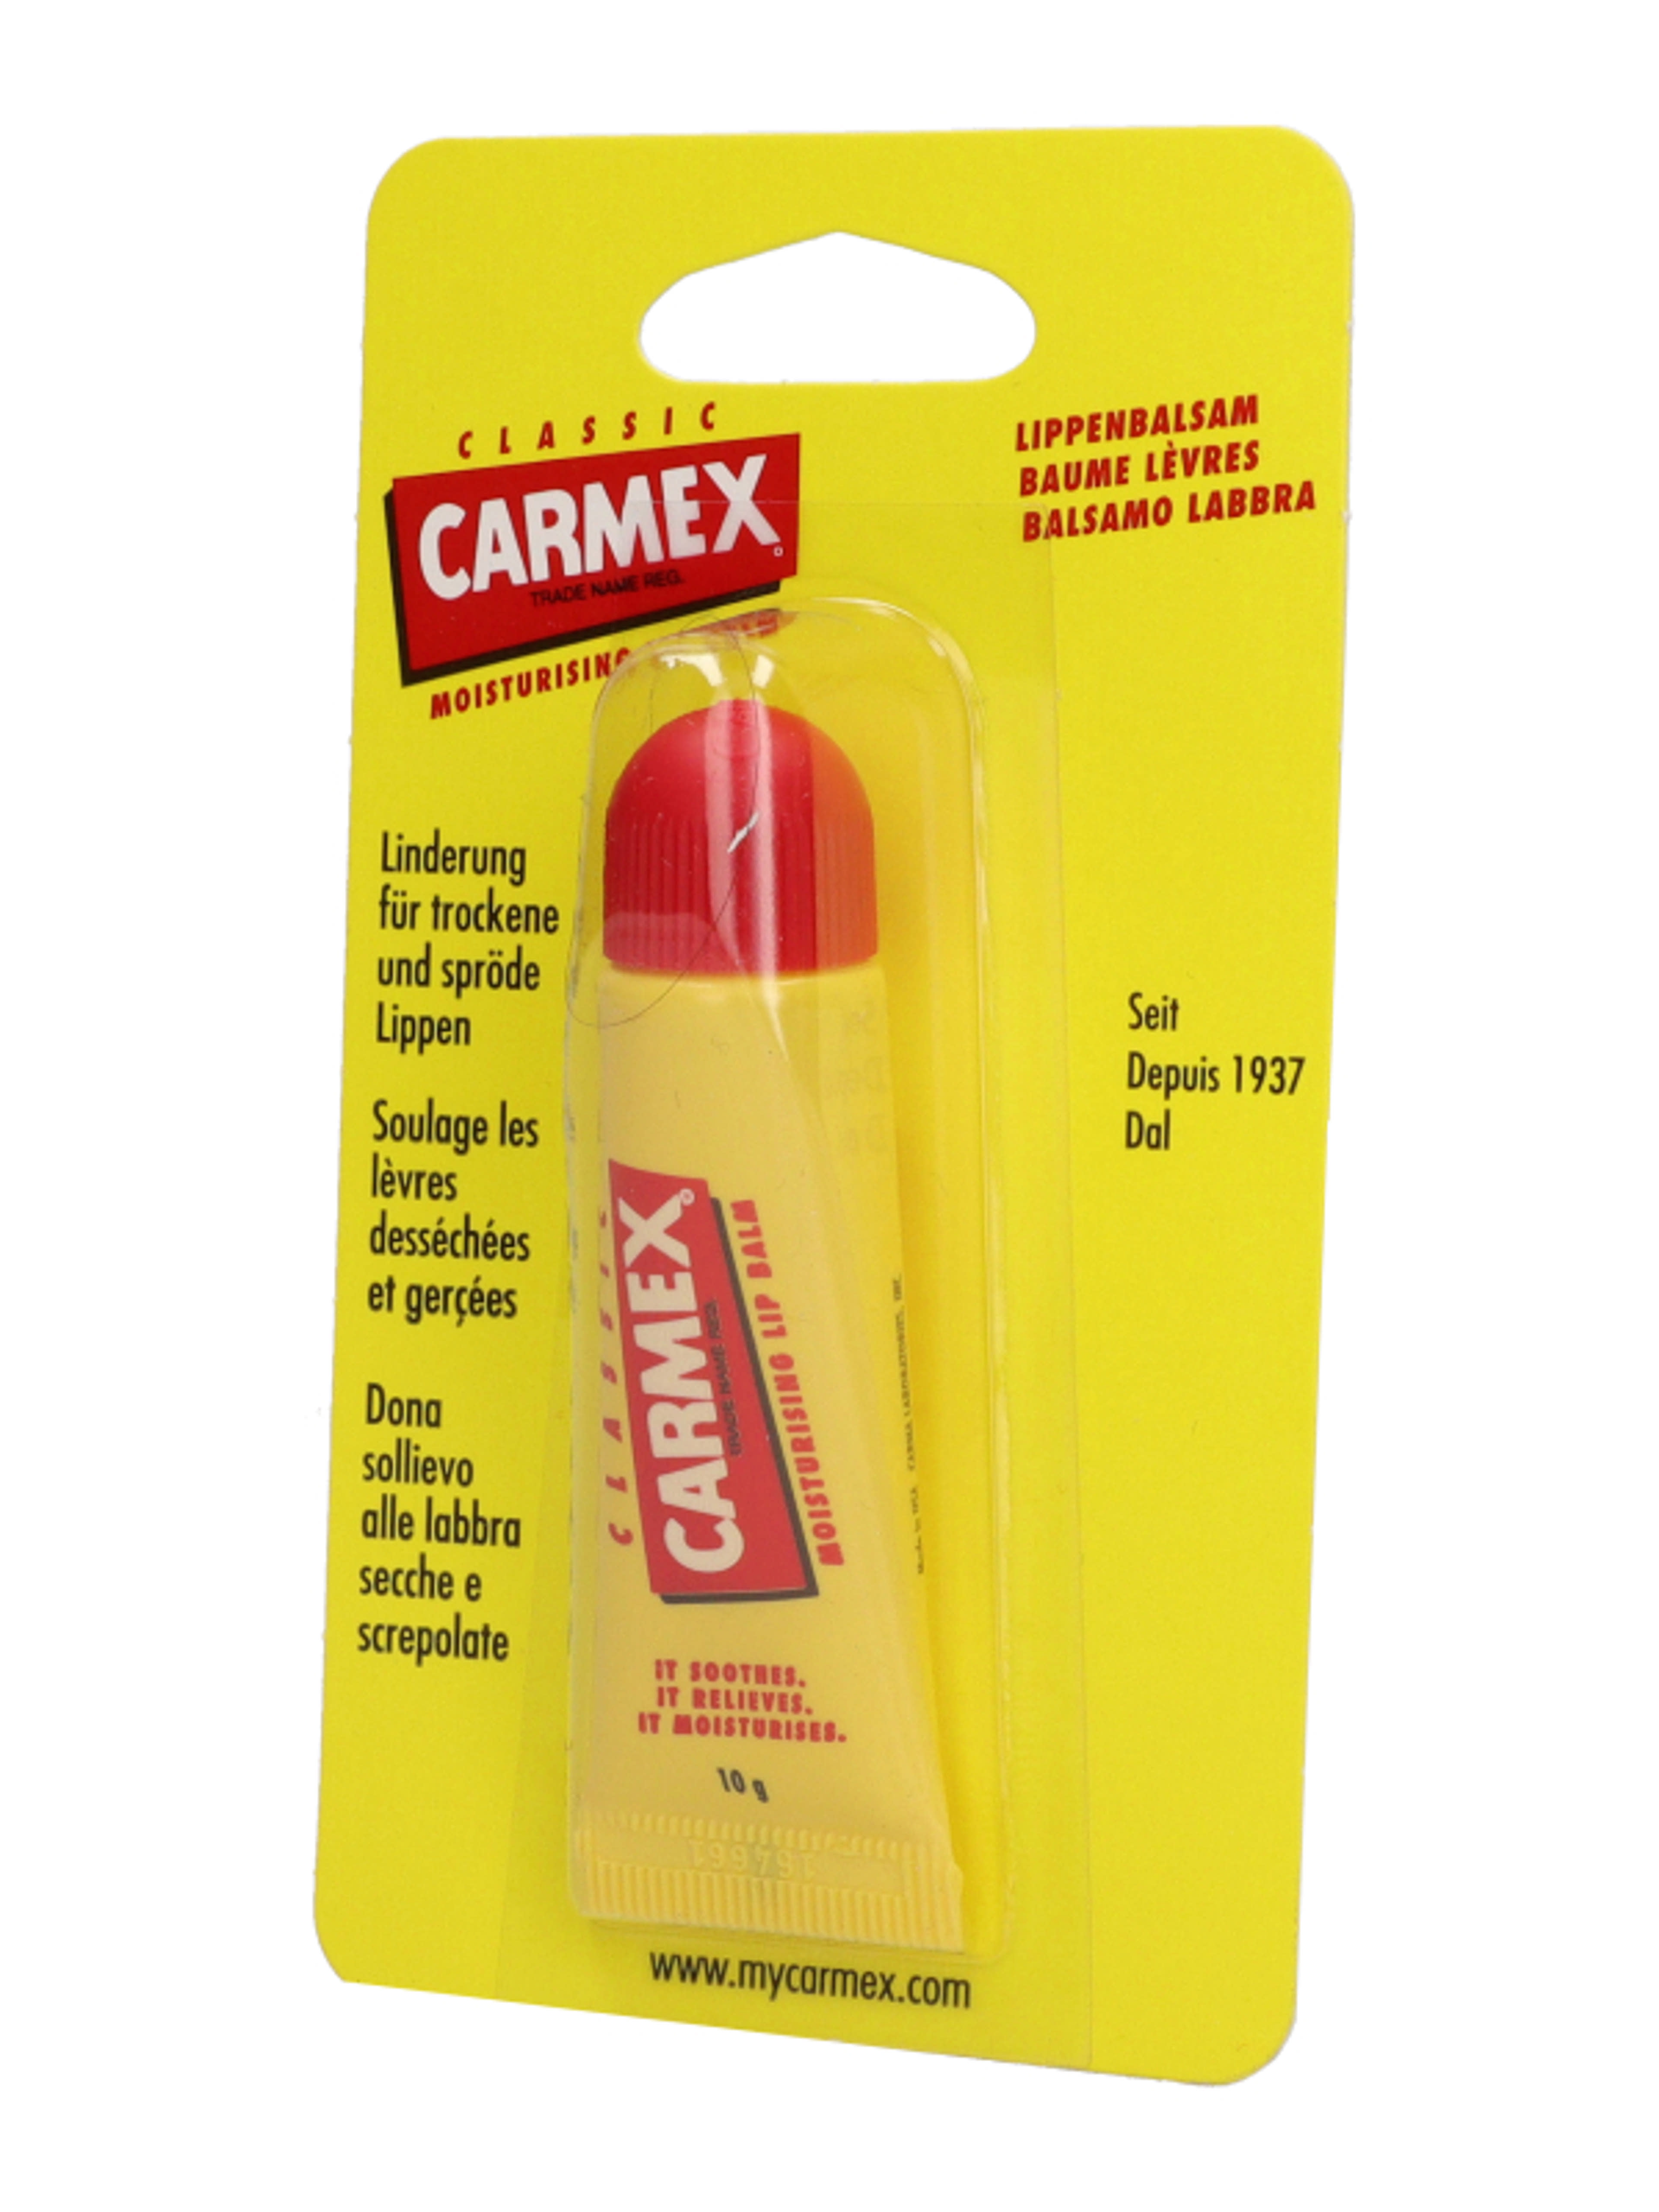 Carmex tubusos ajakápoló - 10 g-3